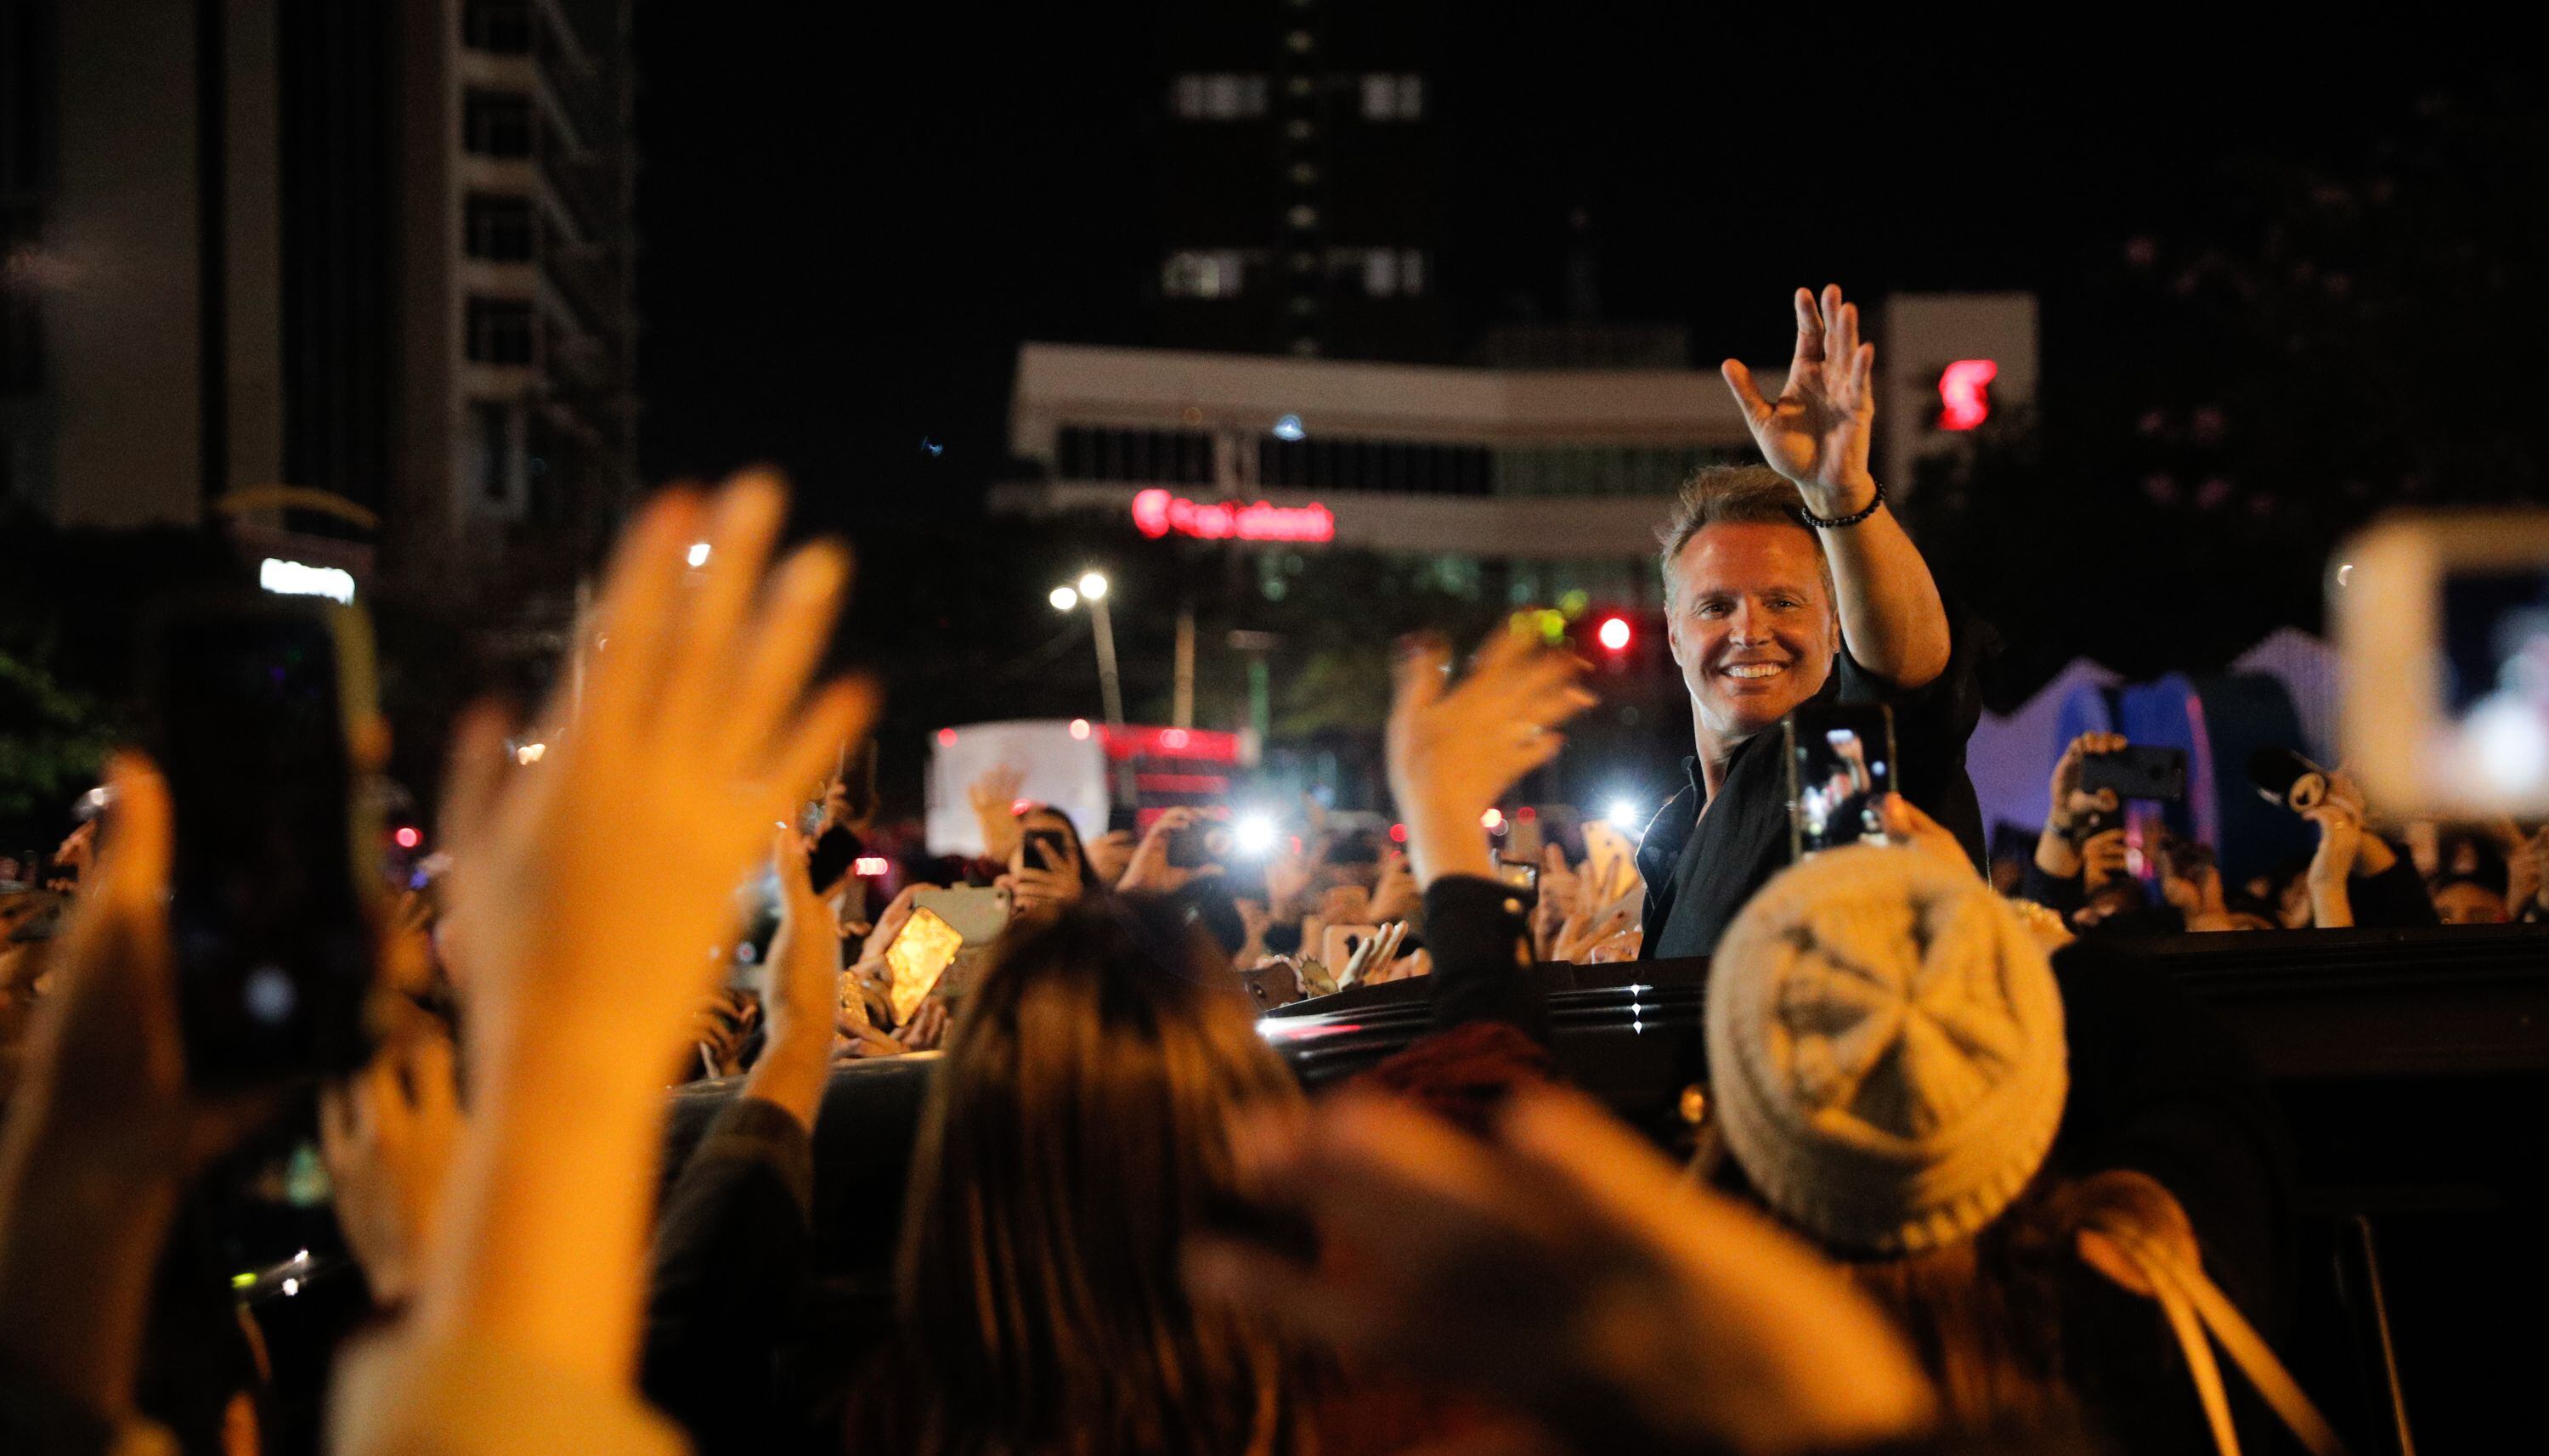 En marzo del 2019, Luis Miguel se presentó en concierto por última vez en Costa Rica.  Esa noche, después del show, saludó a sus fans a la salida del Estadio Nacional.